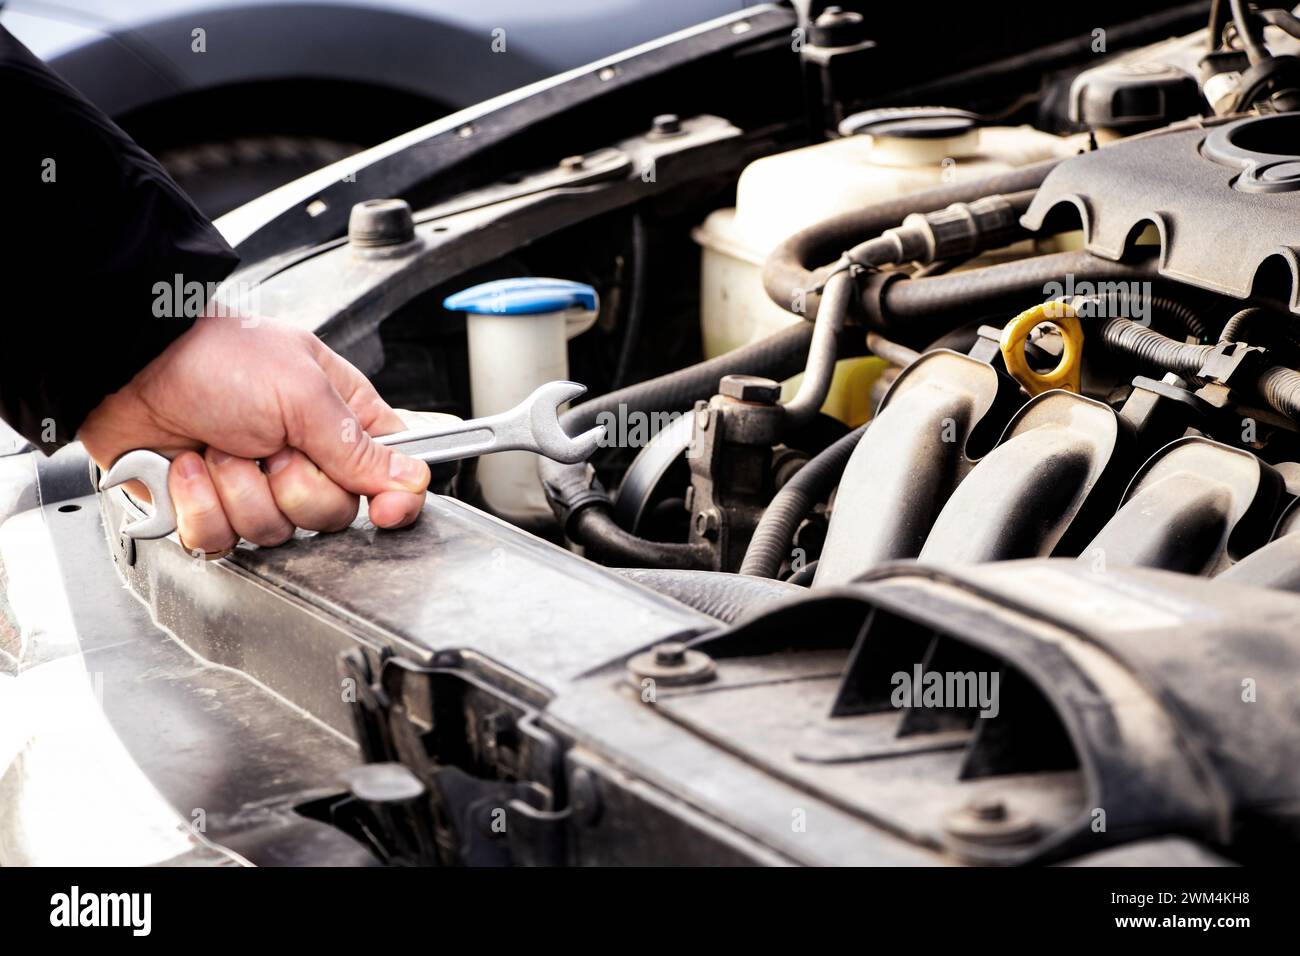 Entretien de voiture, entretien et réparation, mécanicien automobile, main et clé pour la réparation de voiture, problème de moteur et diagnostic, réparation de voiture Banque D'Images